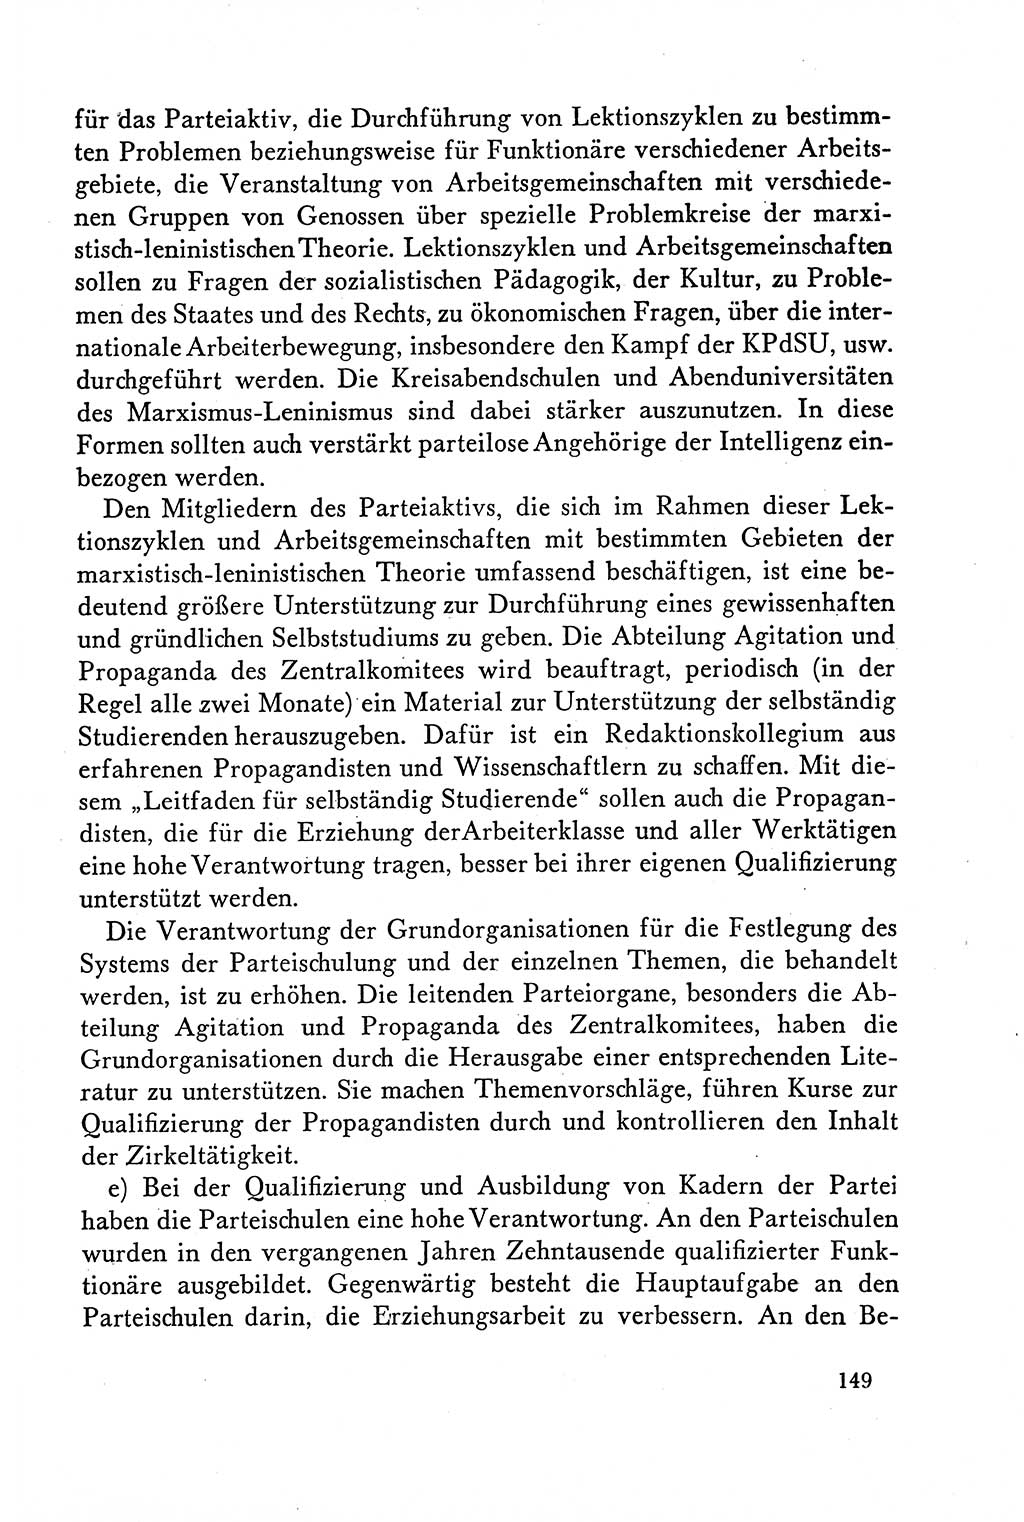 Dokumente der Sozialistischen Einheitspartei Deutschlands (SED) [Deutsche Demokratische Republik (DDR)] 1958-1959, Seite 149 (Dok. SED DDR 1958-1959, S. 149)